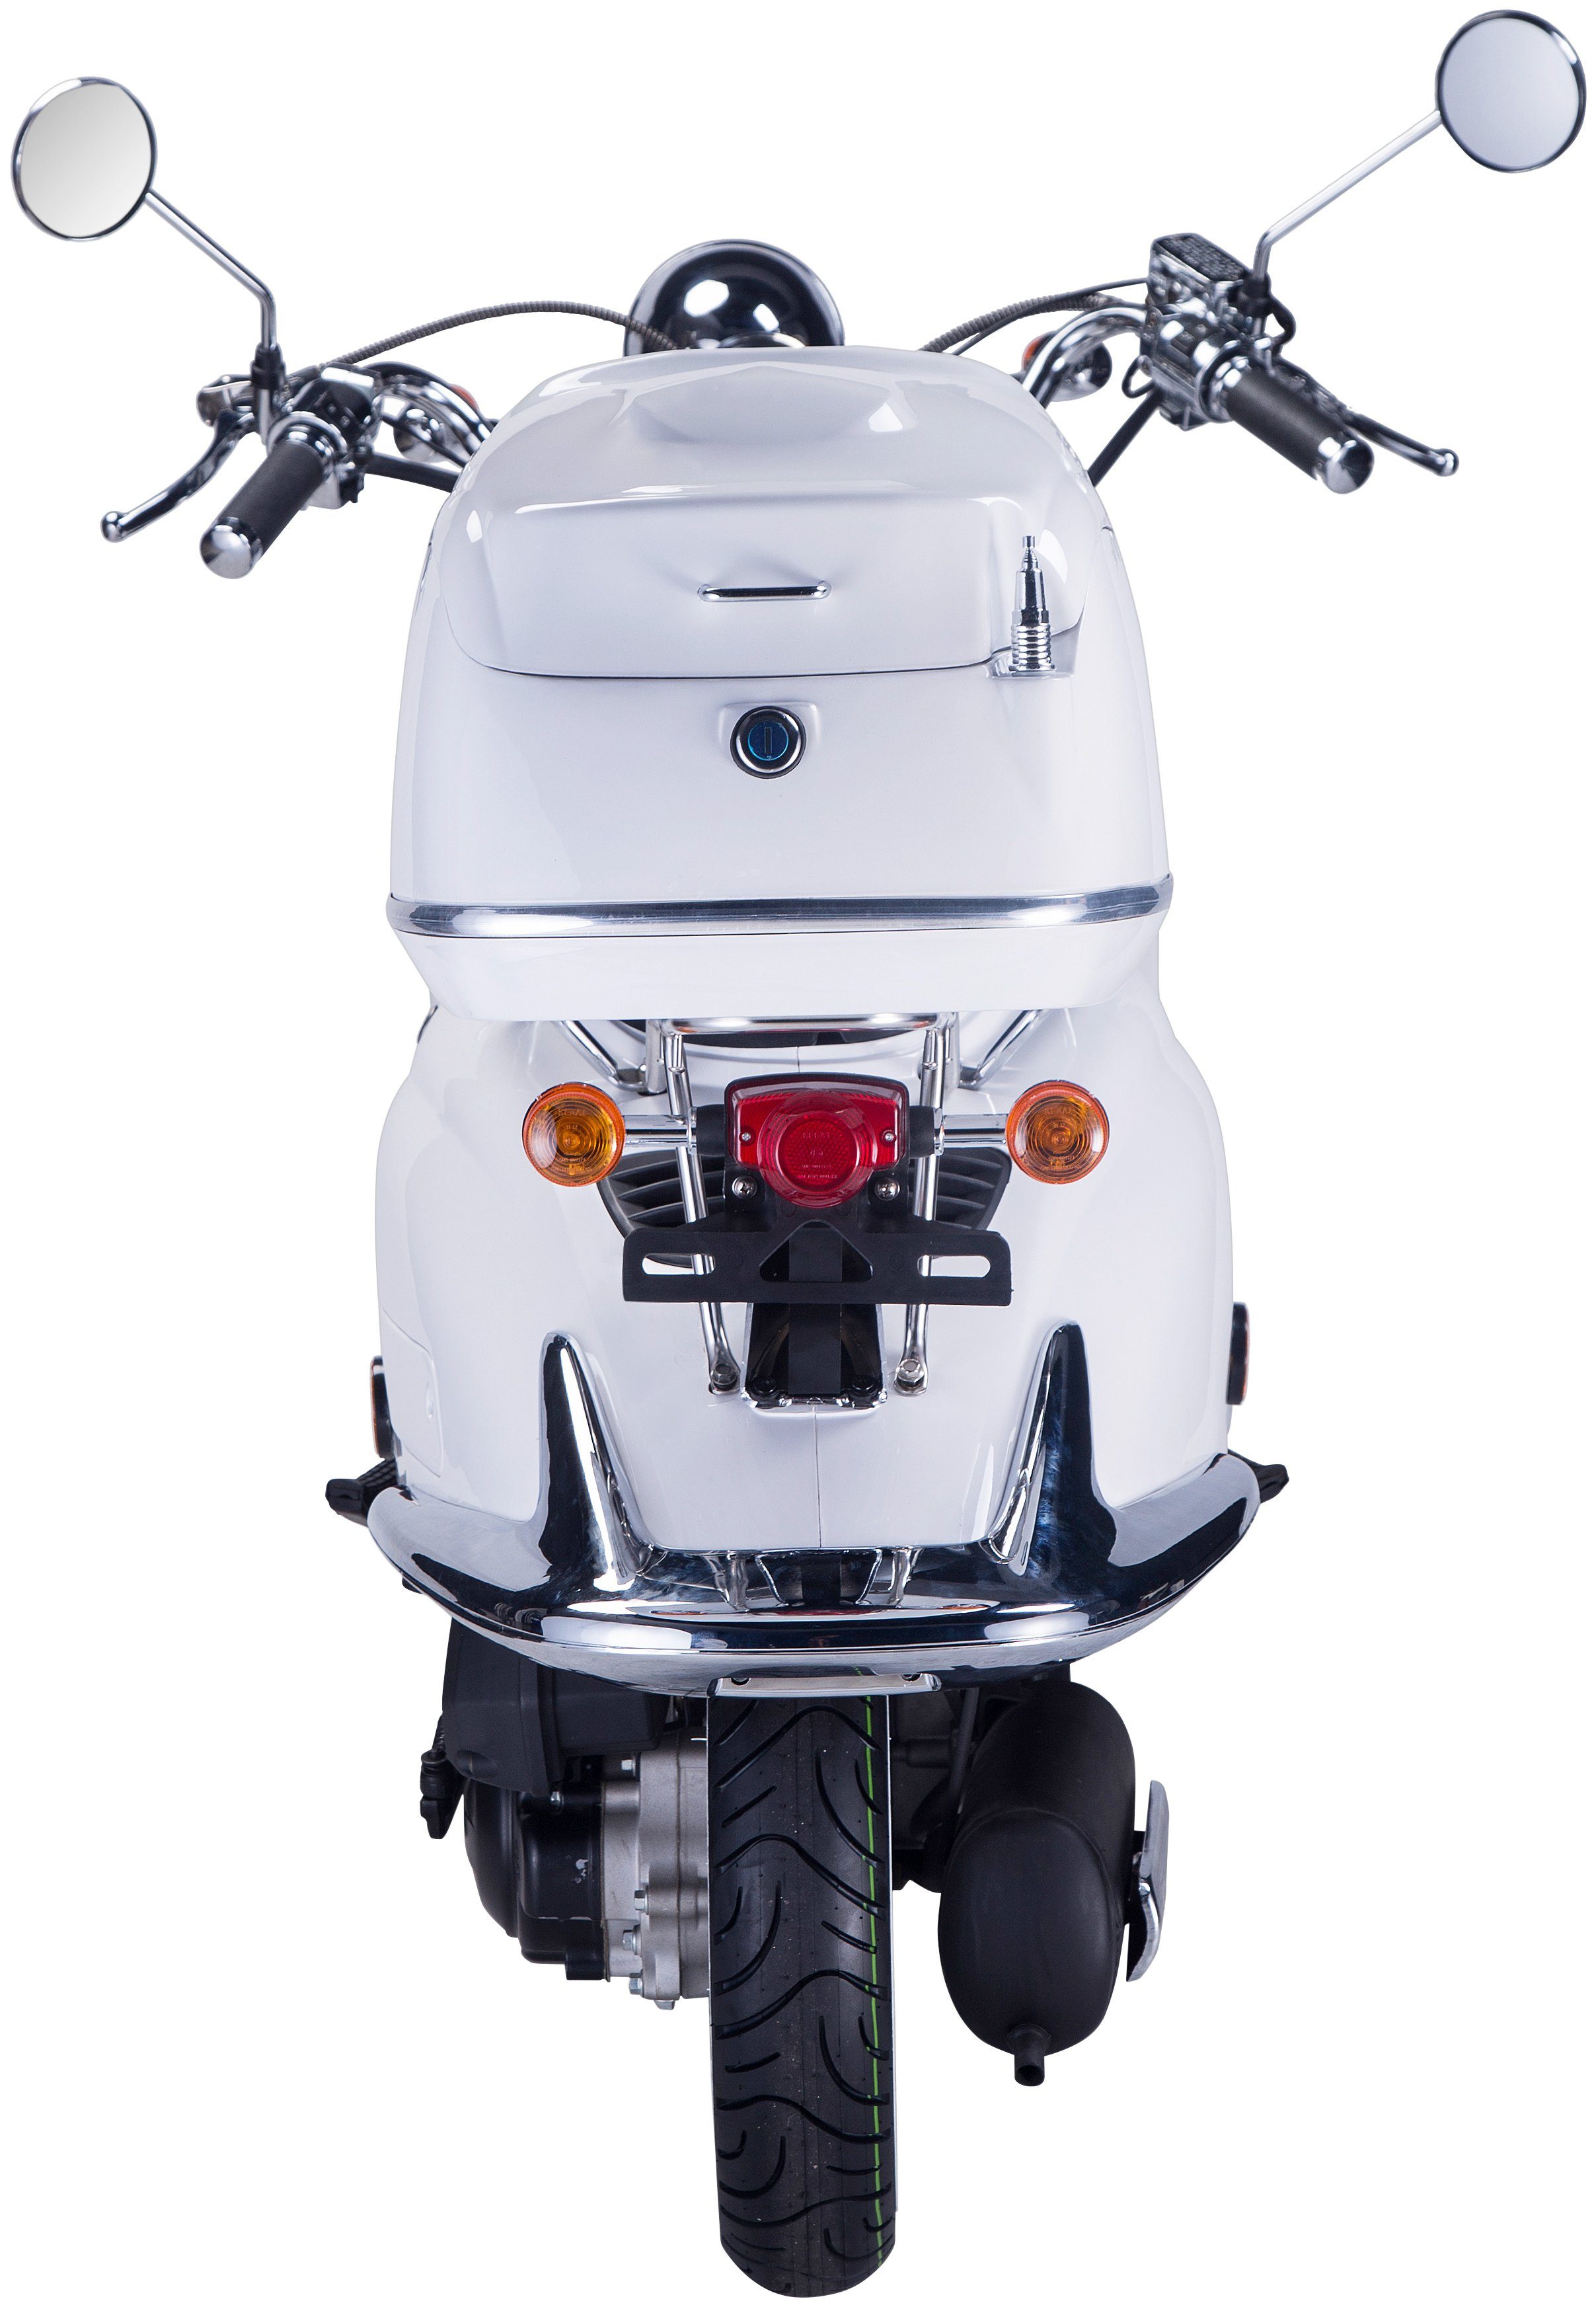 GT UNION Motorroller 5, 85 Strada, 125 ccm, mit Topcase (Set), km/h, Euro weiß